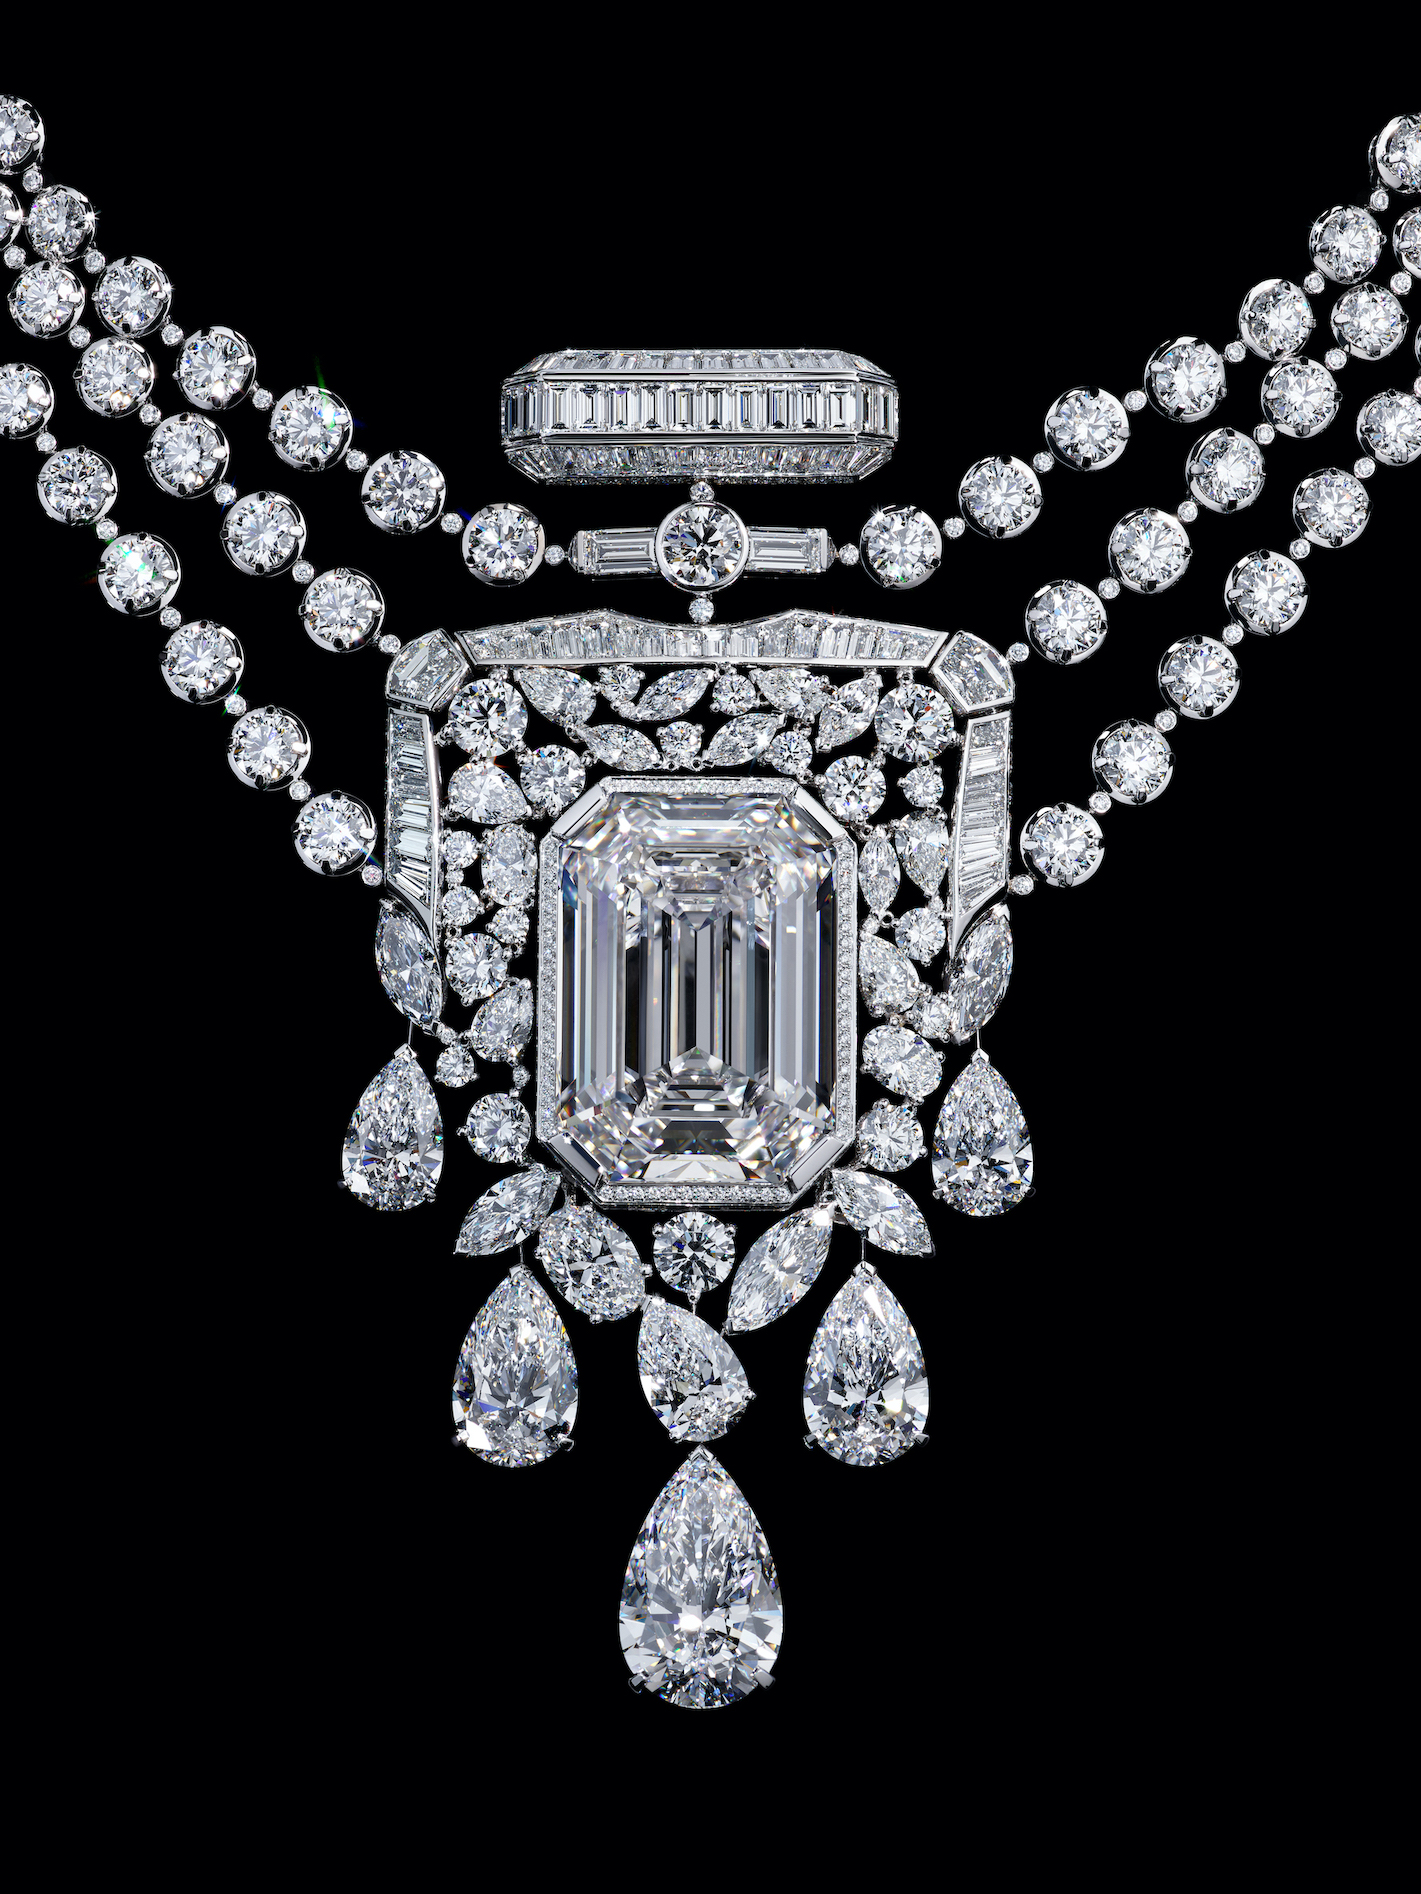 Chanel masterpiece. Il nuovo collier ispirato a N°5 con il diamante centrale da 55.55 carati